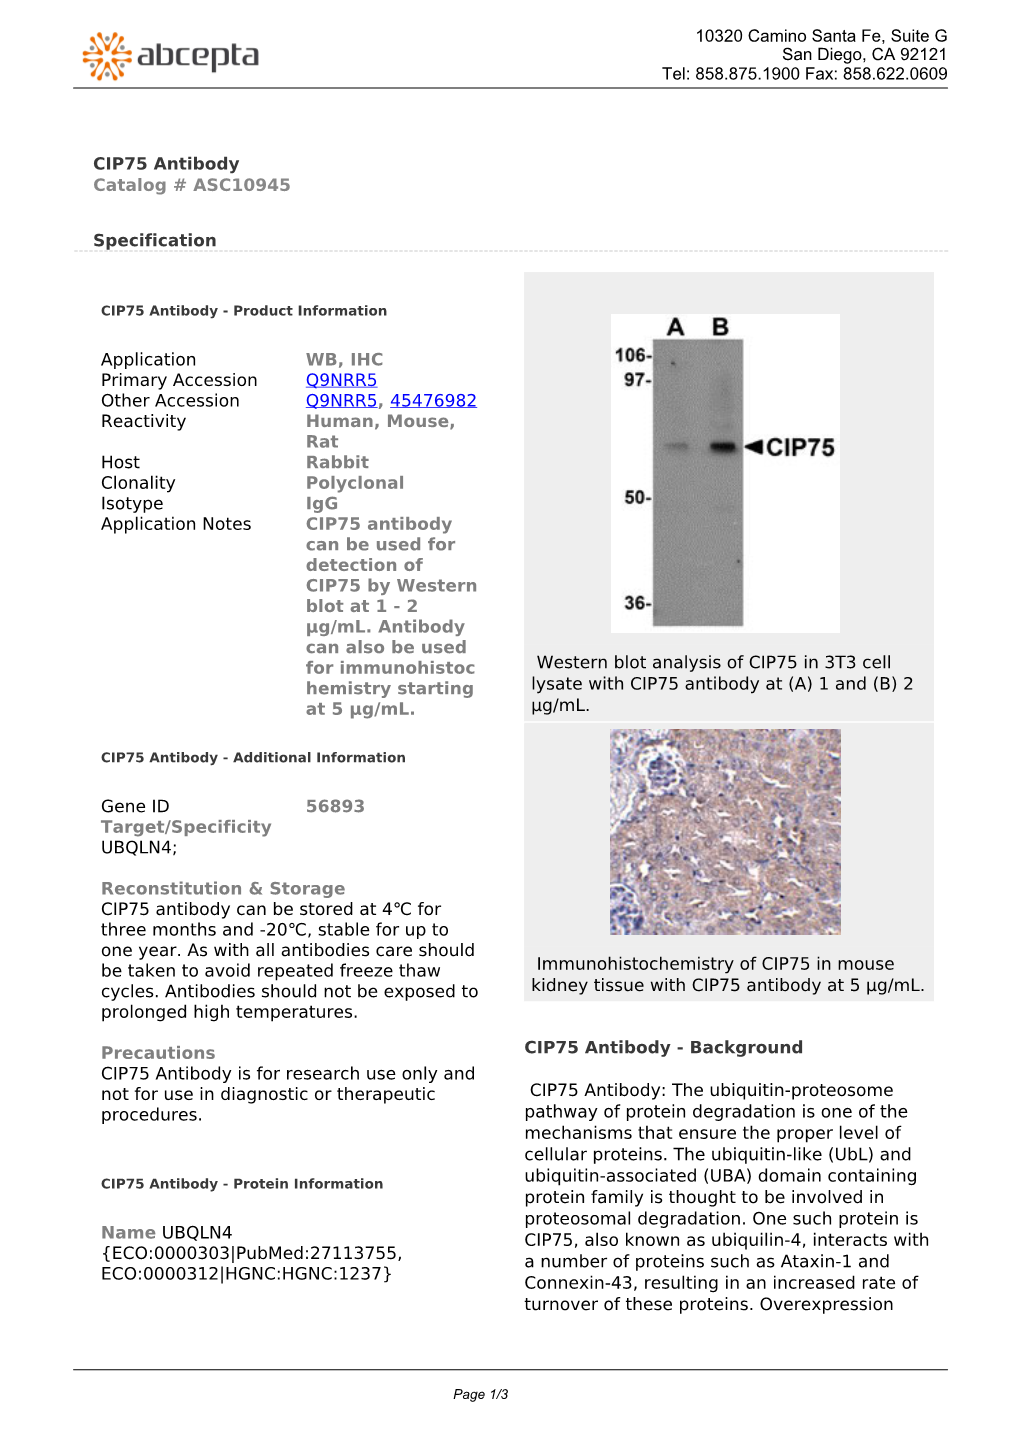 CIP75 Antibody Catalog # ASC10945